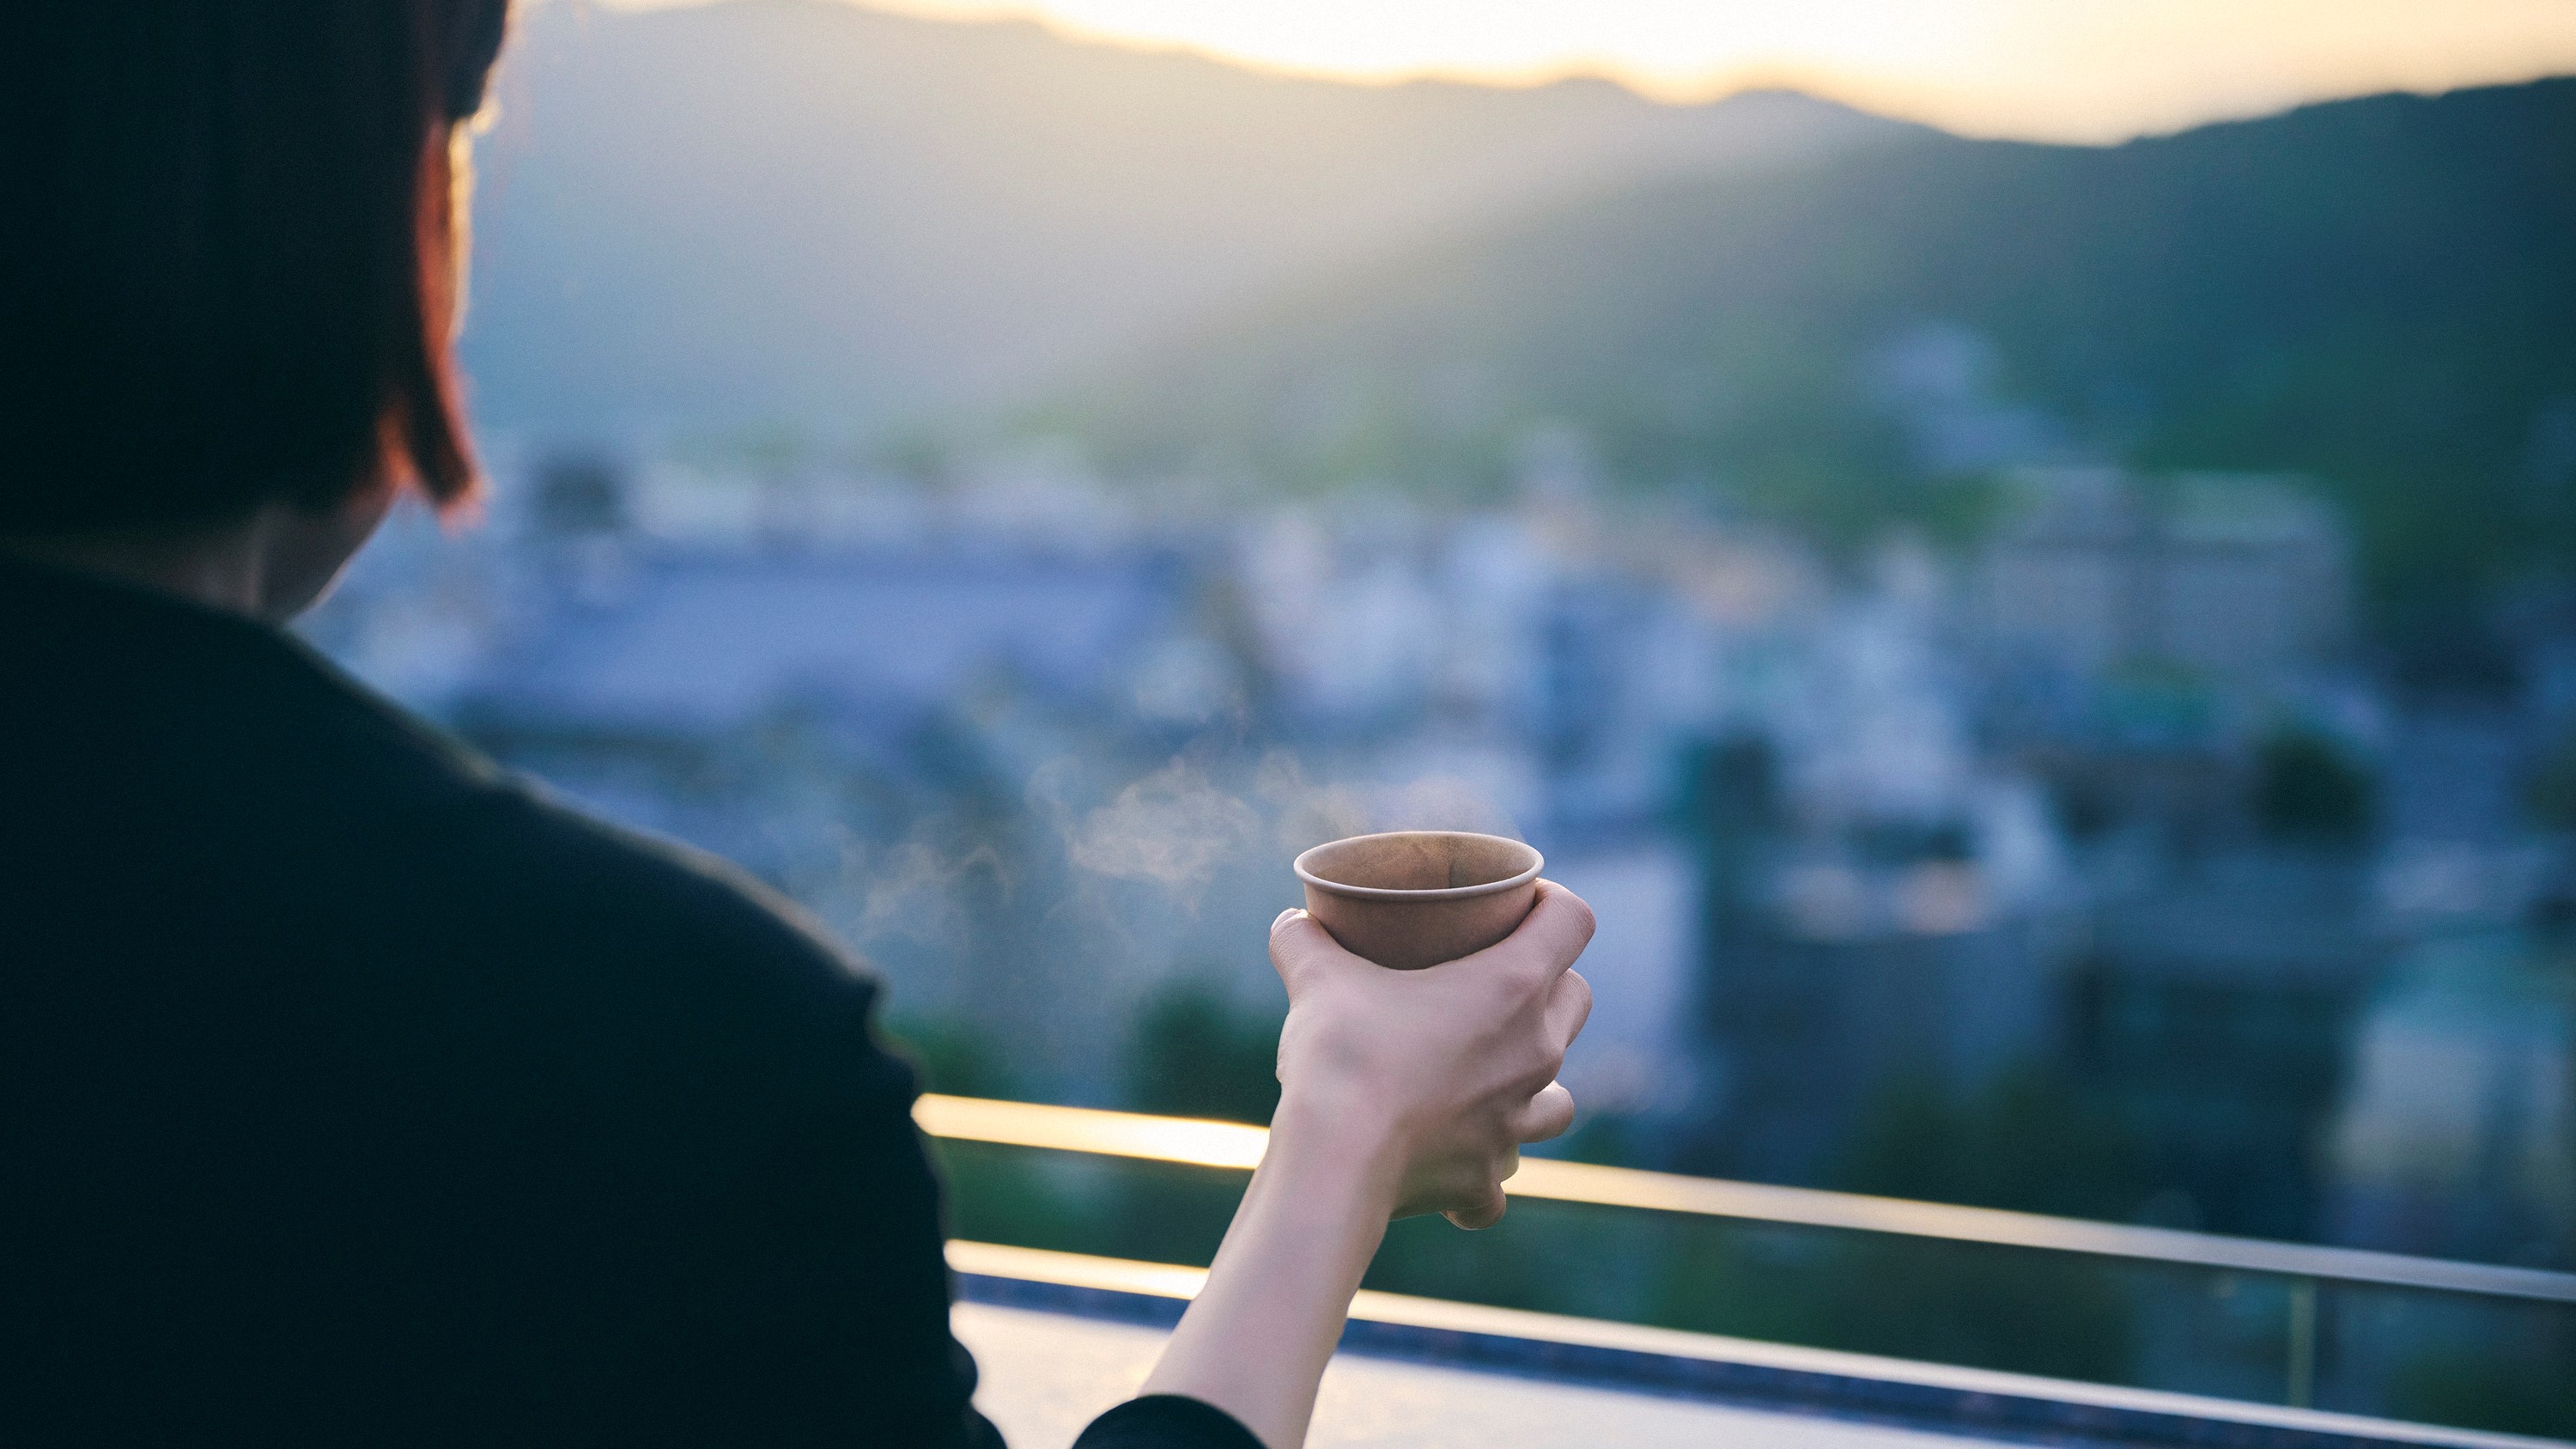 ルーフトップラウンジ「空庭テラス」一日の始まりに爽やかな朝のコーヒータイムはいかがでしょうか